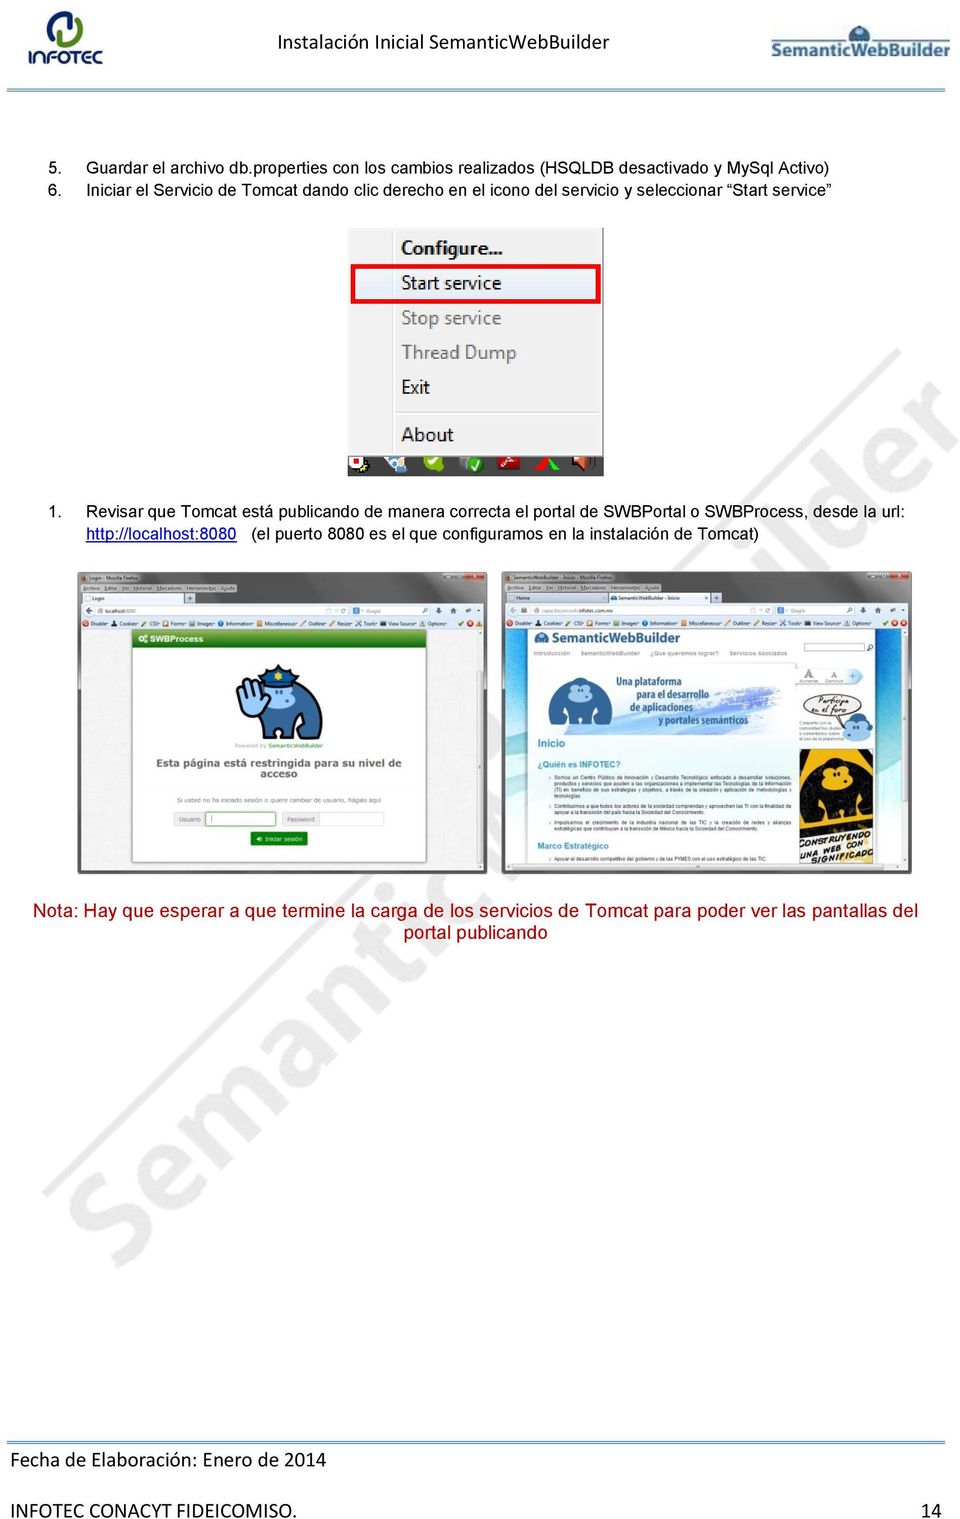 Revisar que Tomcat está publicando de manera correcta el portal de SWBPortal o SWBProcess, desde la url: http://localhost:8080 (el puerto